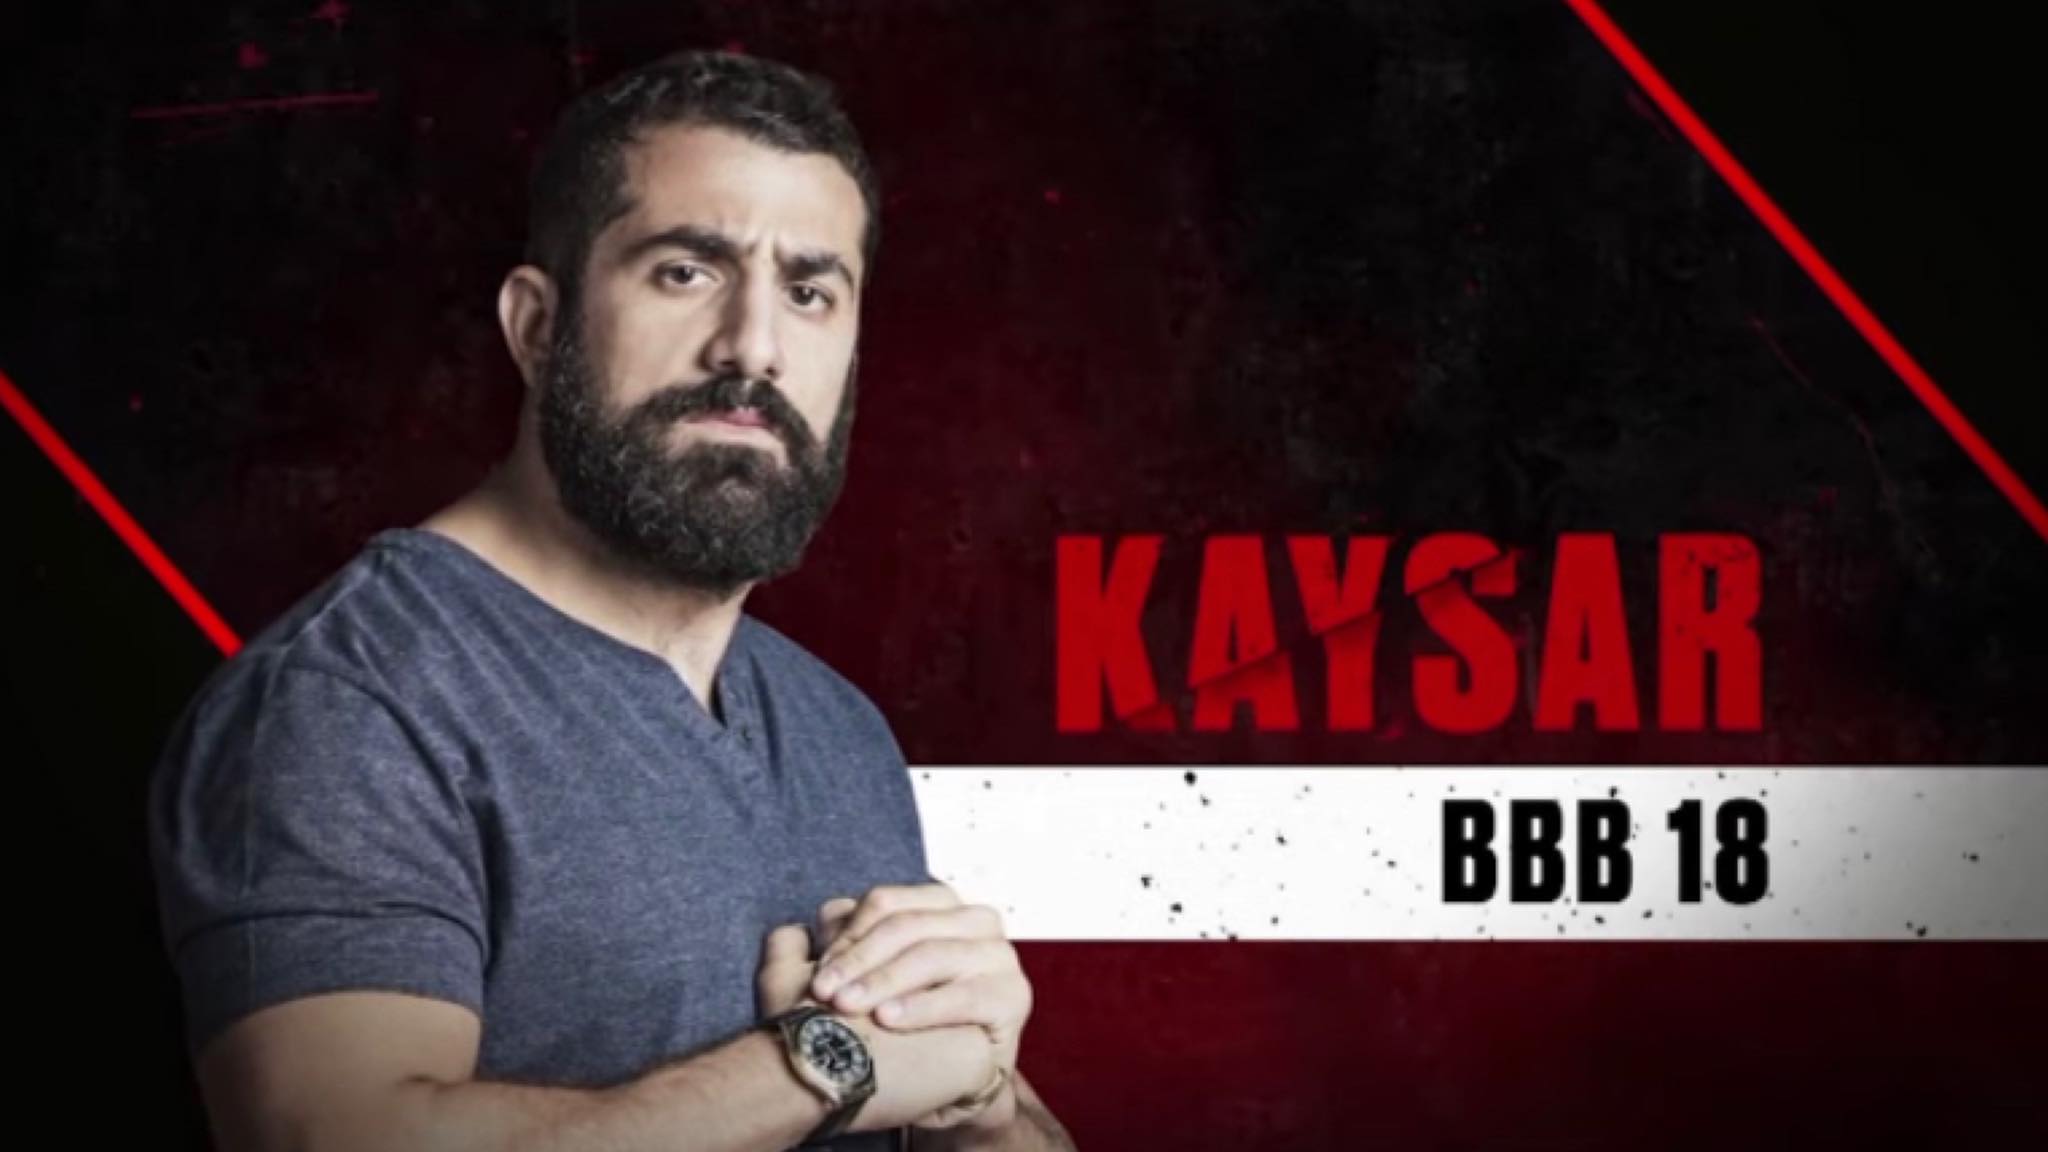 Kaysar também foi um finalista, só que do BBB18. (imagem divulgação/ Globo)